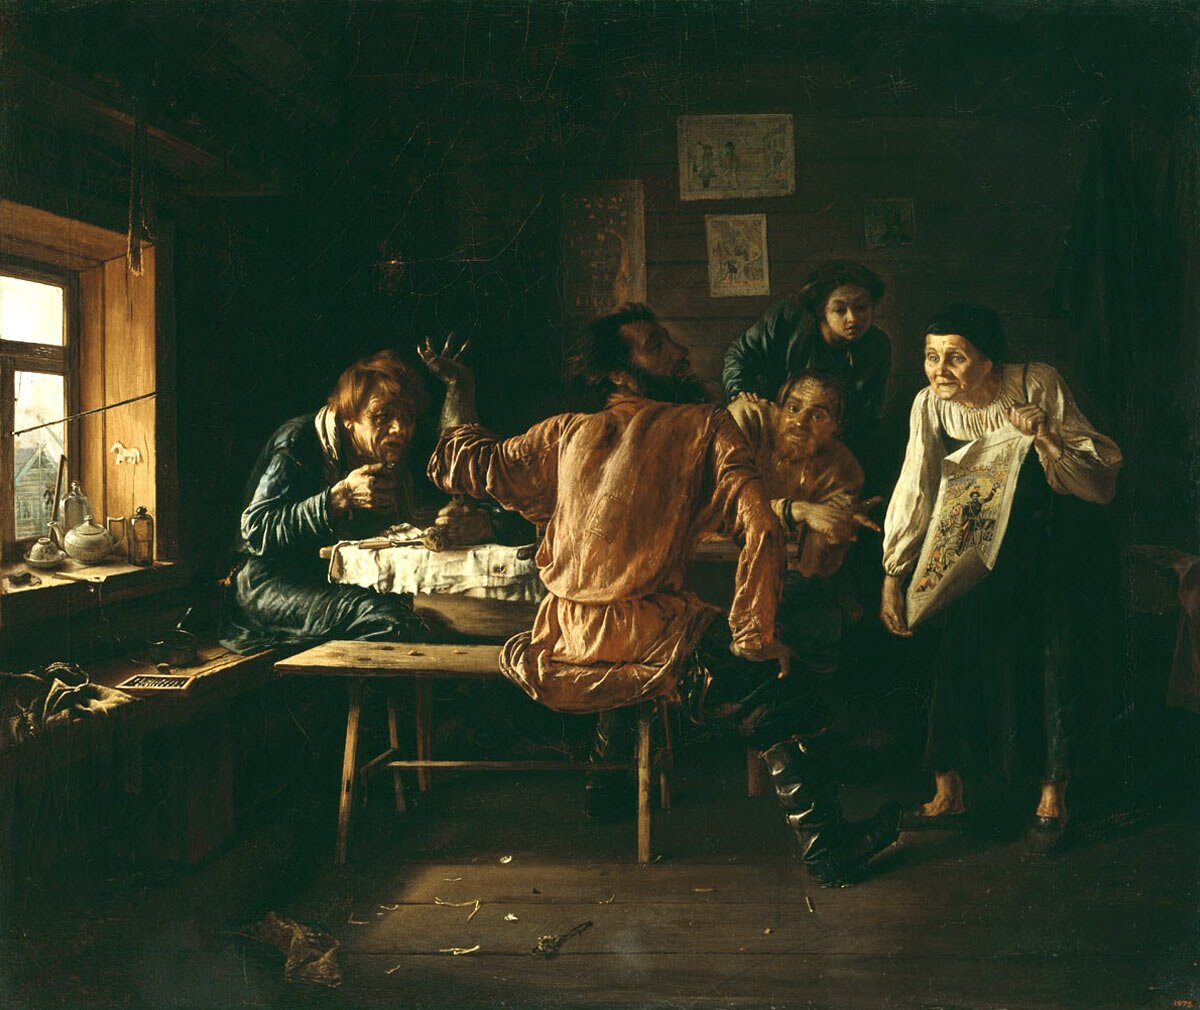 П. П.Чистяков "Три мужика", 1858, Русский музей